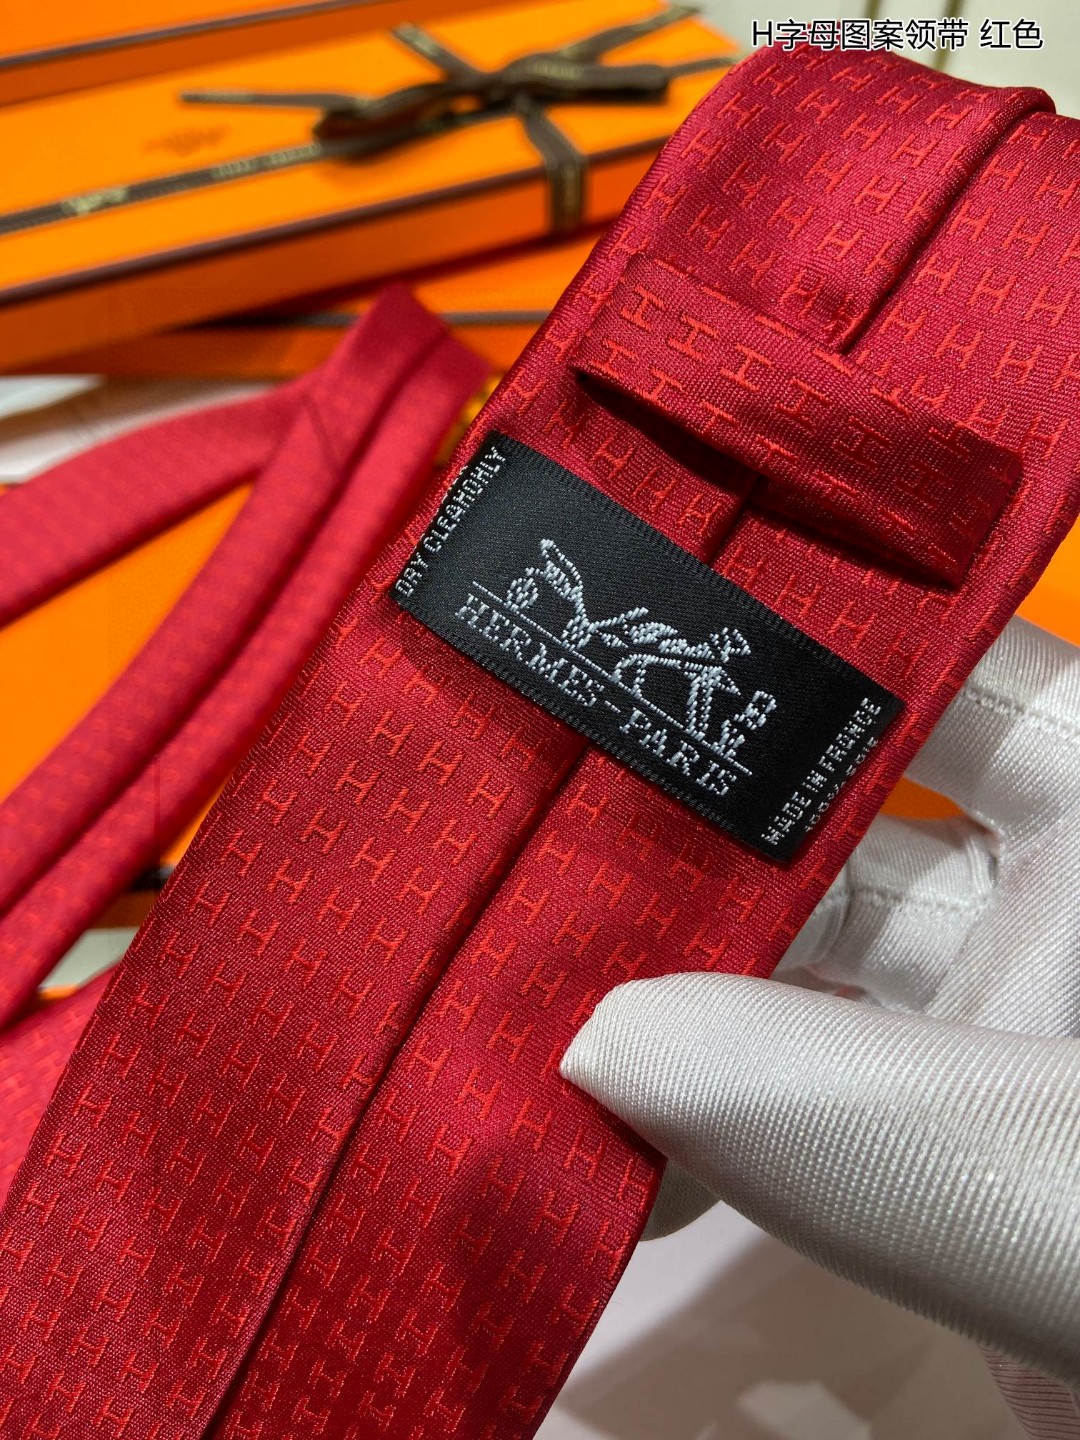 男士新款领带系列H字母图案领带稀有H家每年都有一千条不同印花的领带面世从最初的多以几何图案表现骑术活动为